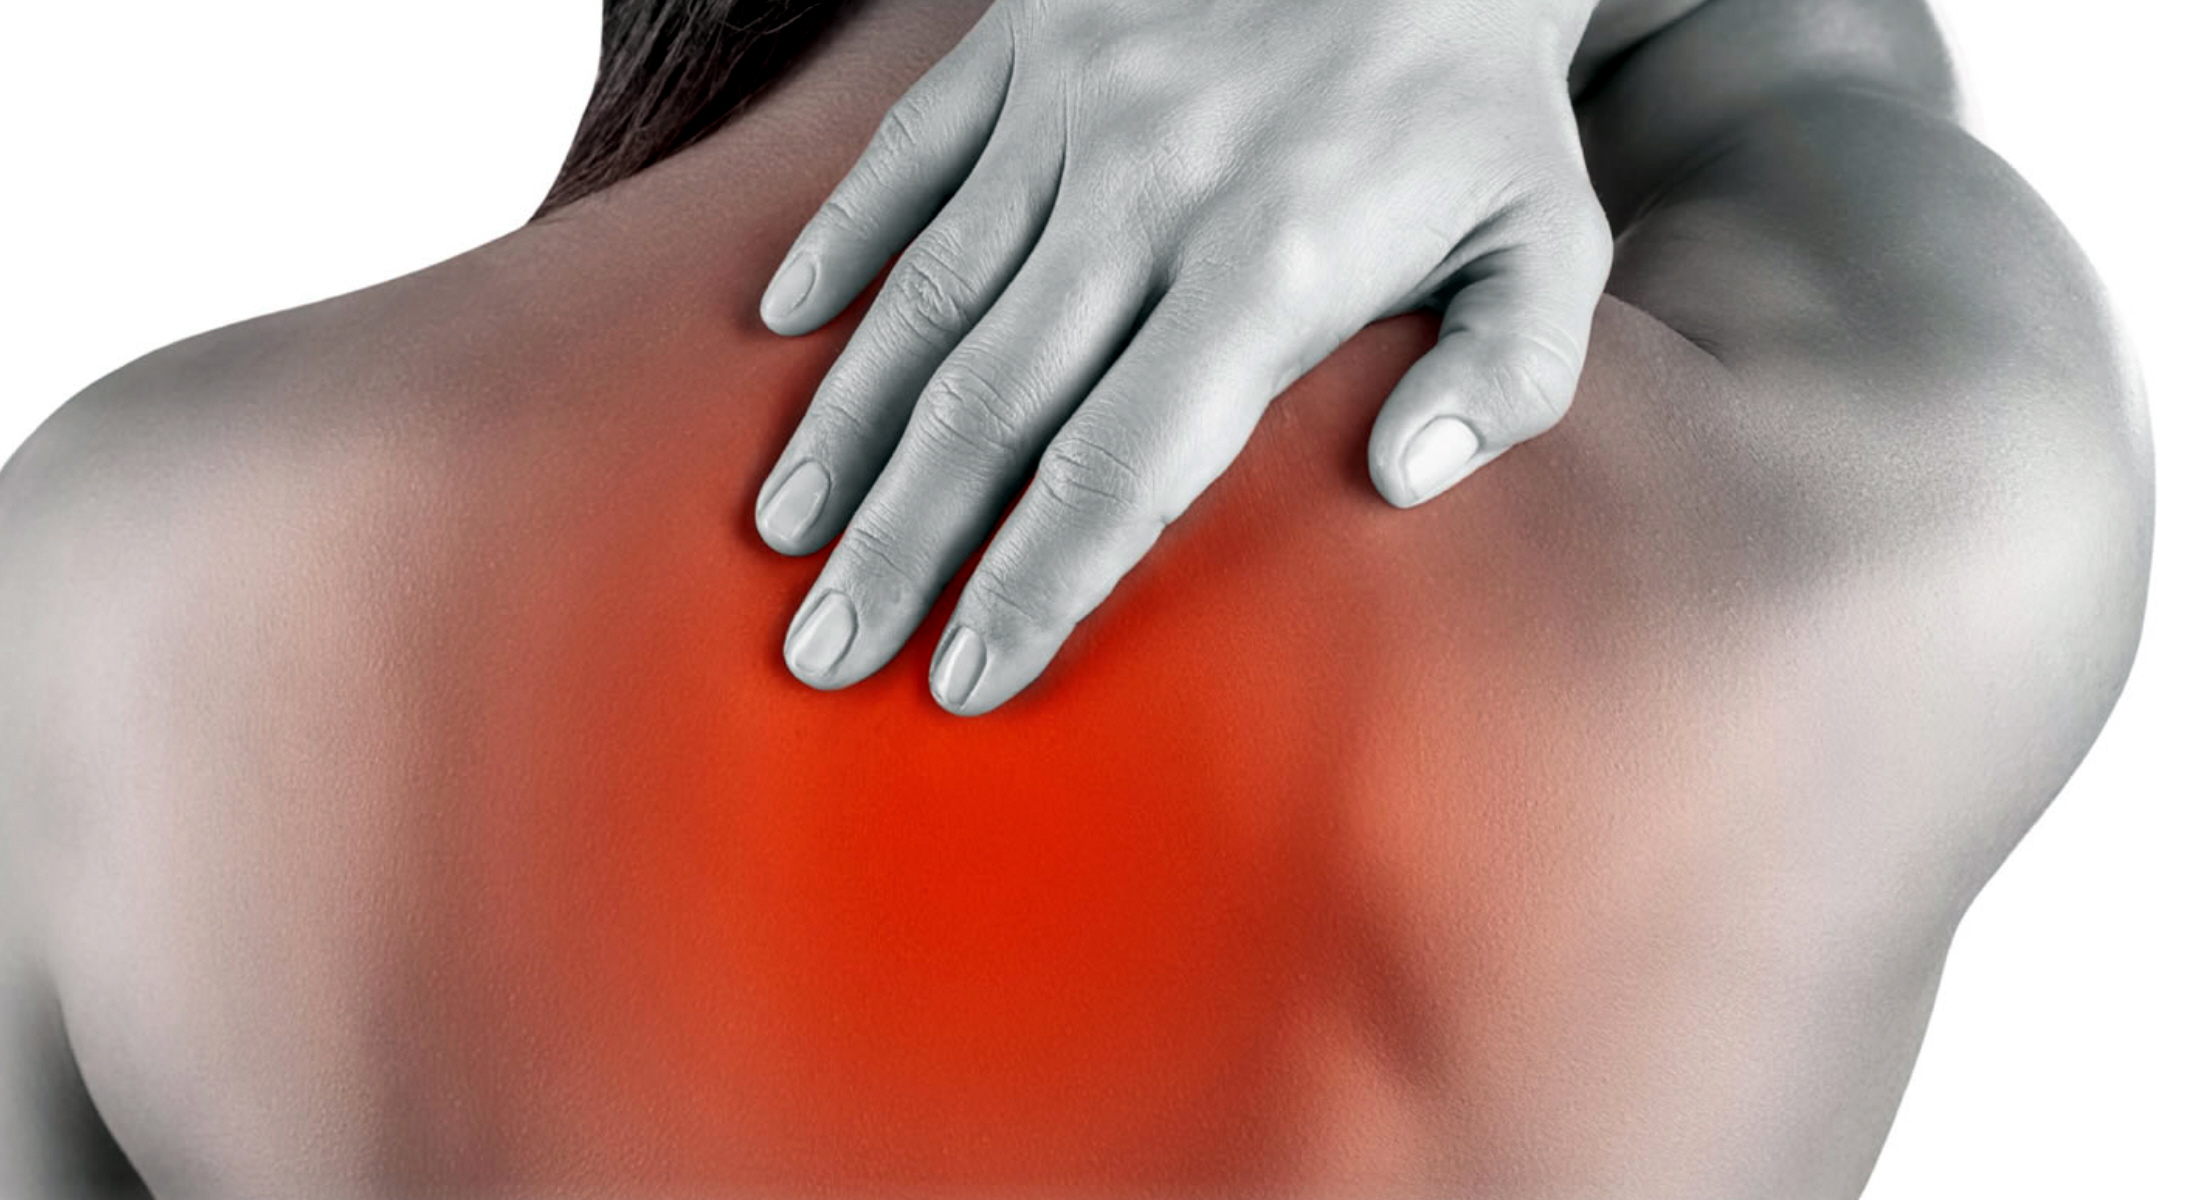 Η μέθοδος που κάνει παρελθόν τον πόνο στον ώμο